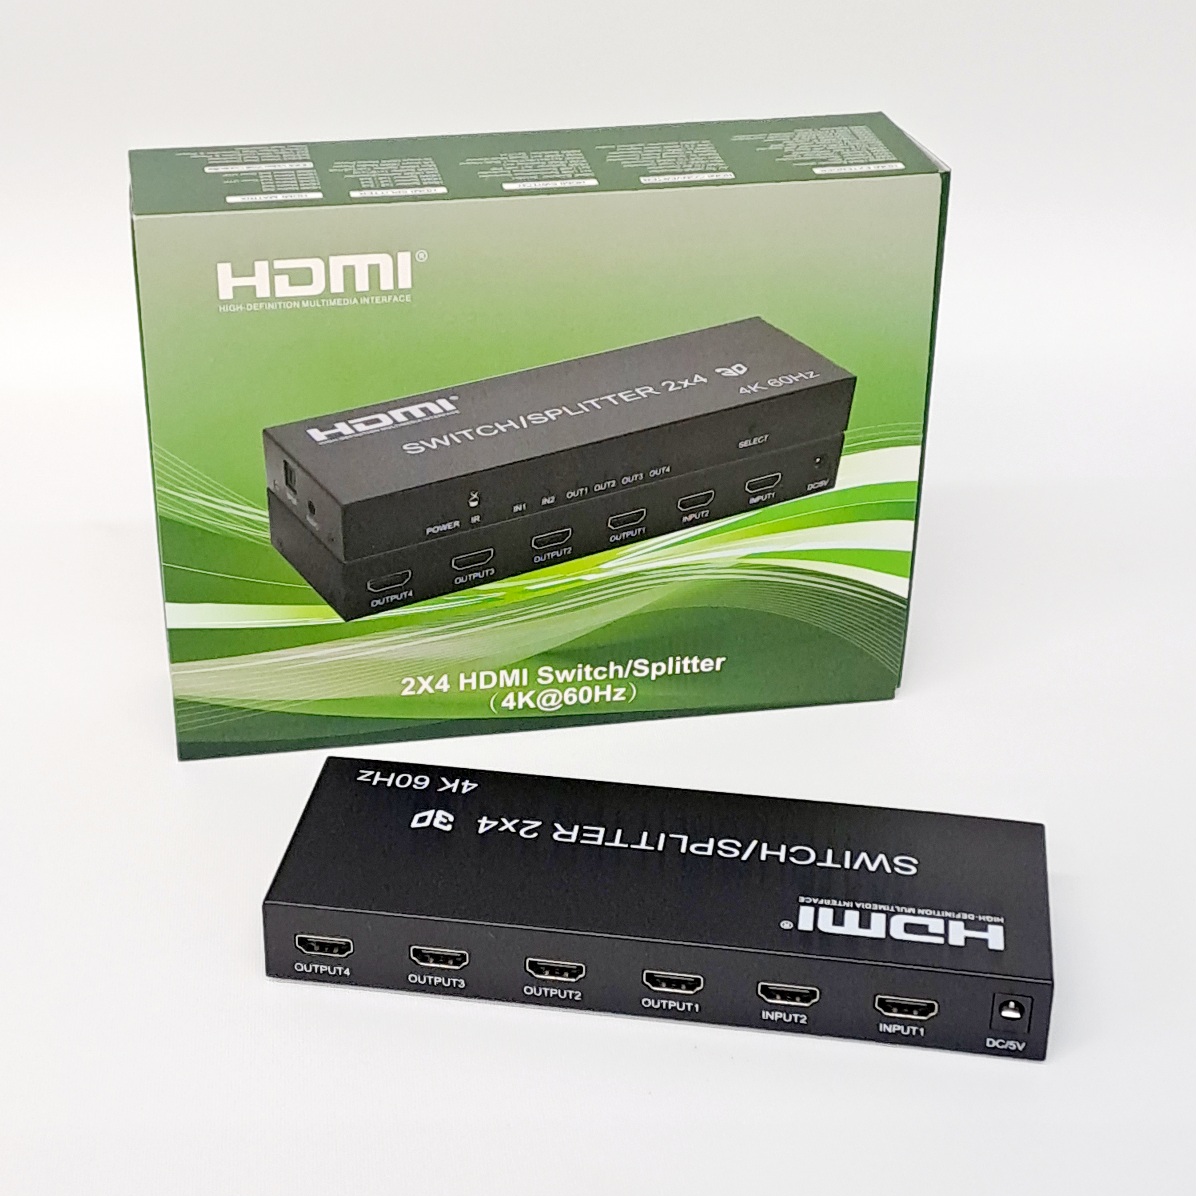 HDMI 4K 60Hz Switch/Splitter 2x4